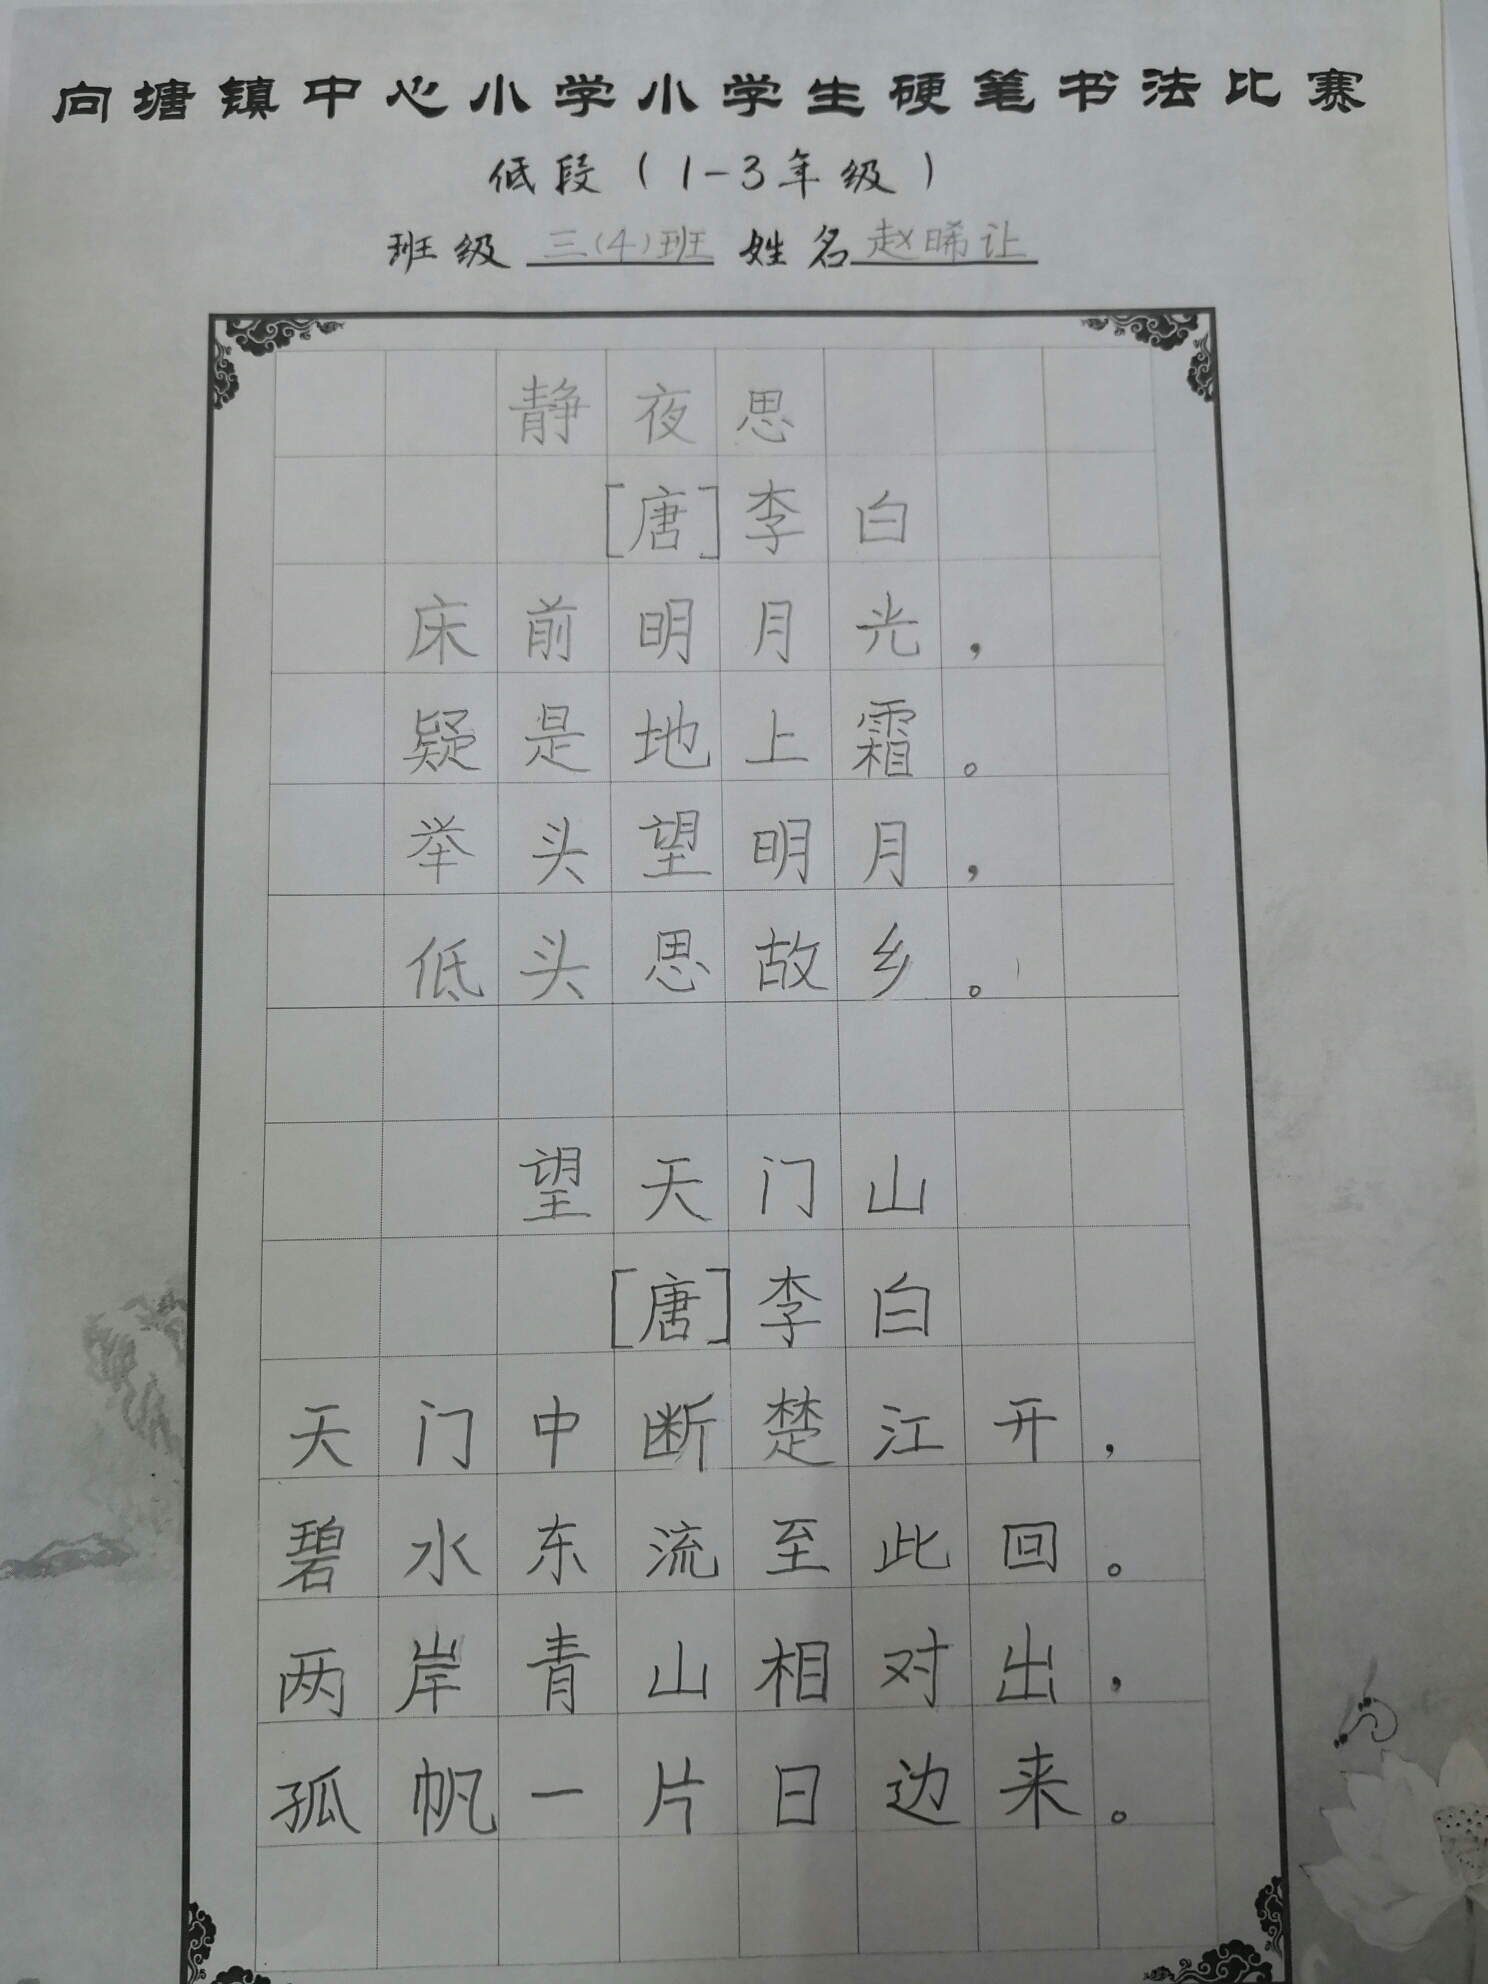 传承中华文化 弘扬国粹魅力――向塘中小举办小学生硬笔书法比赛